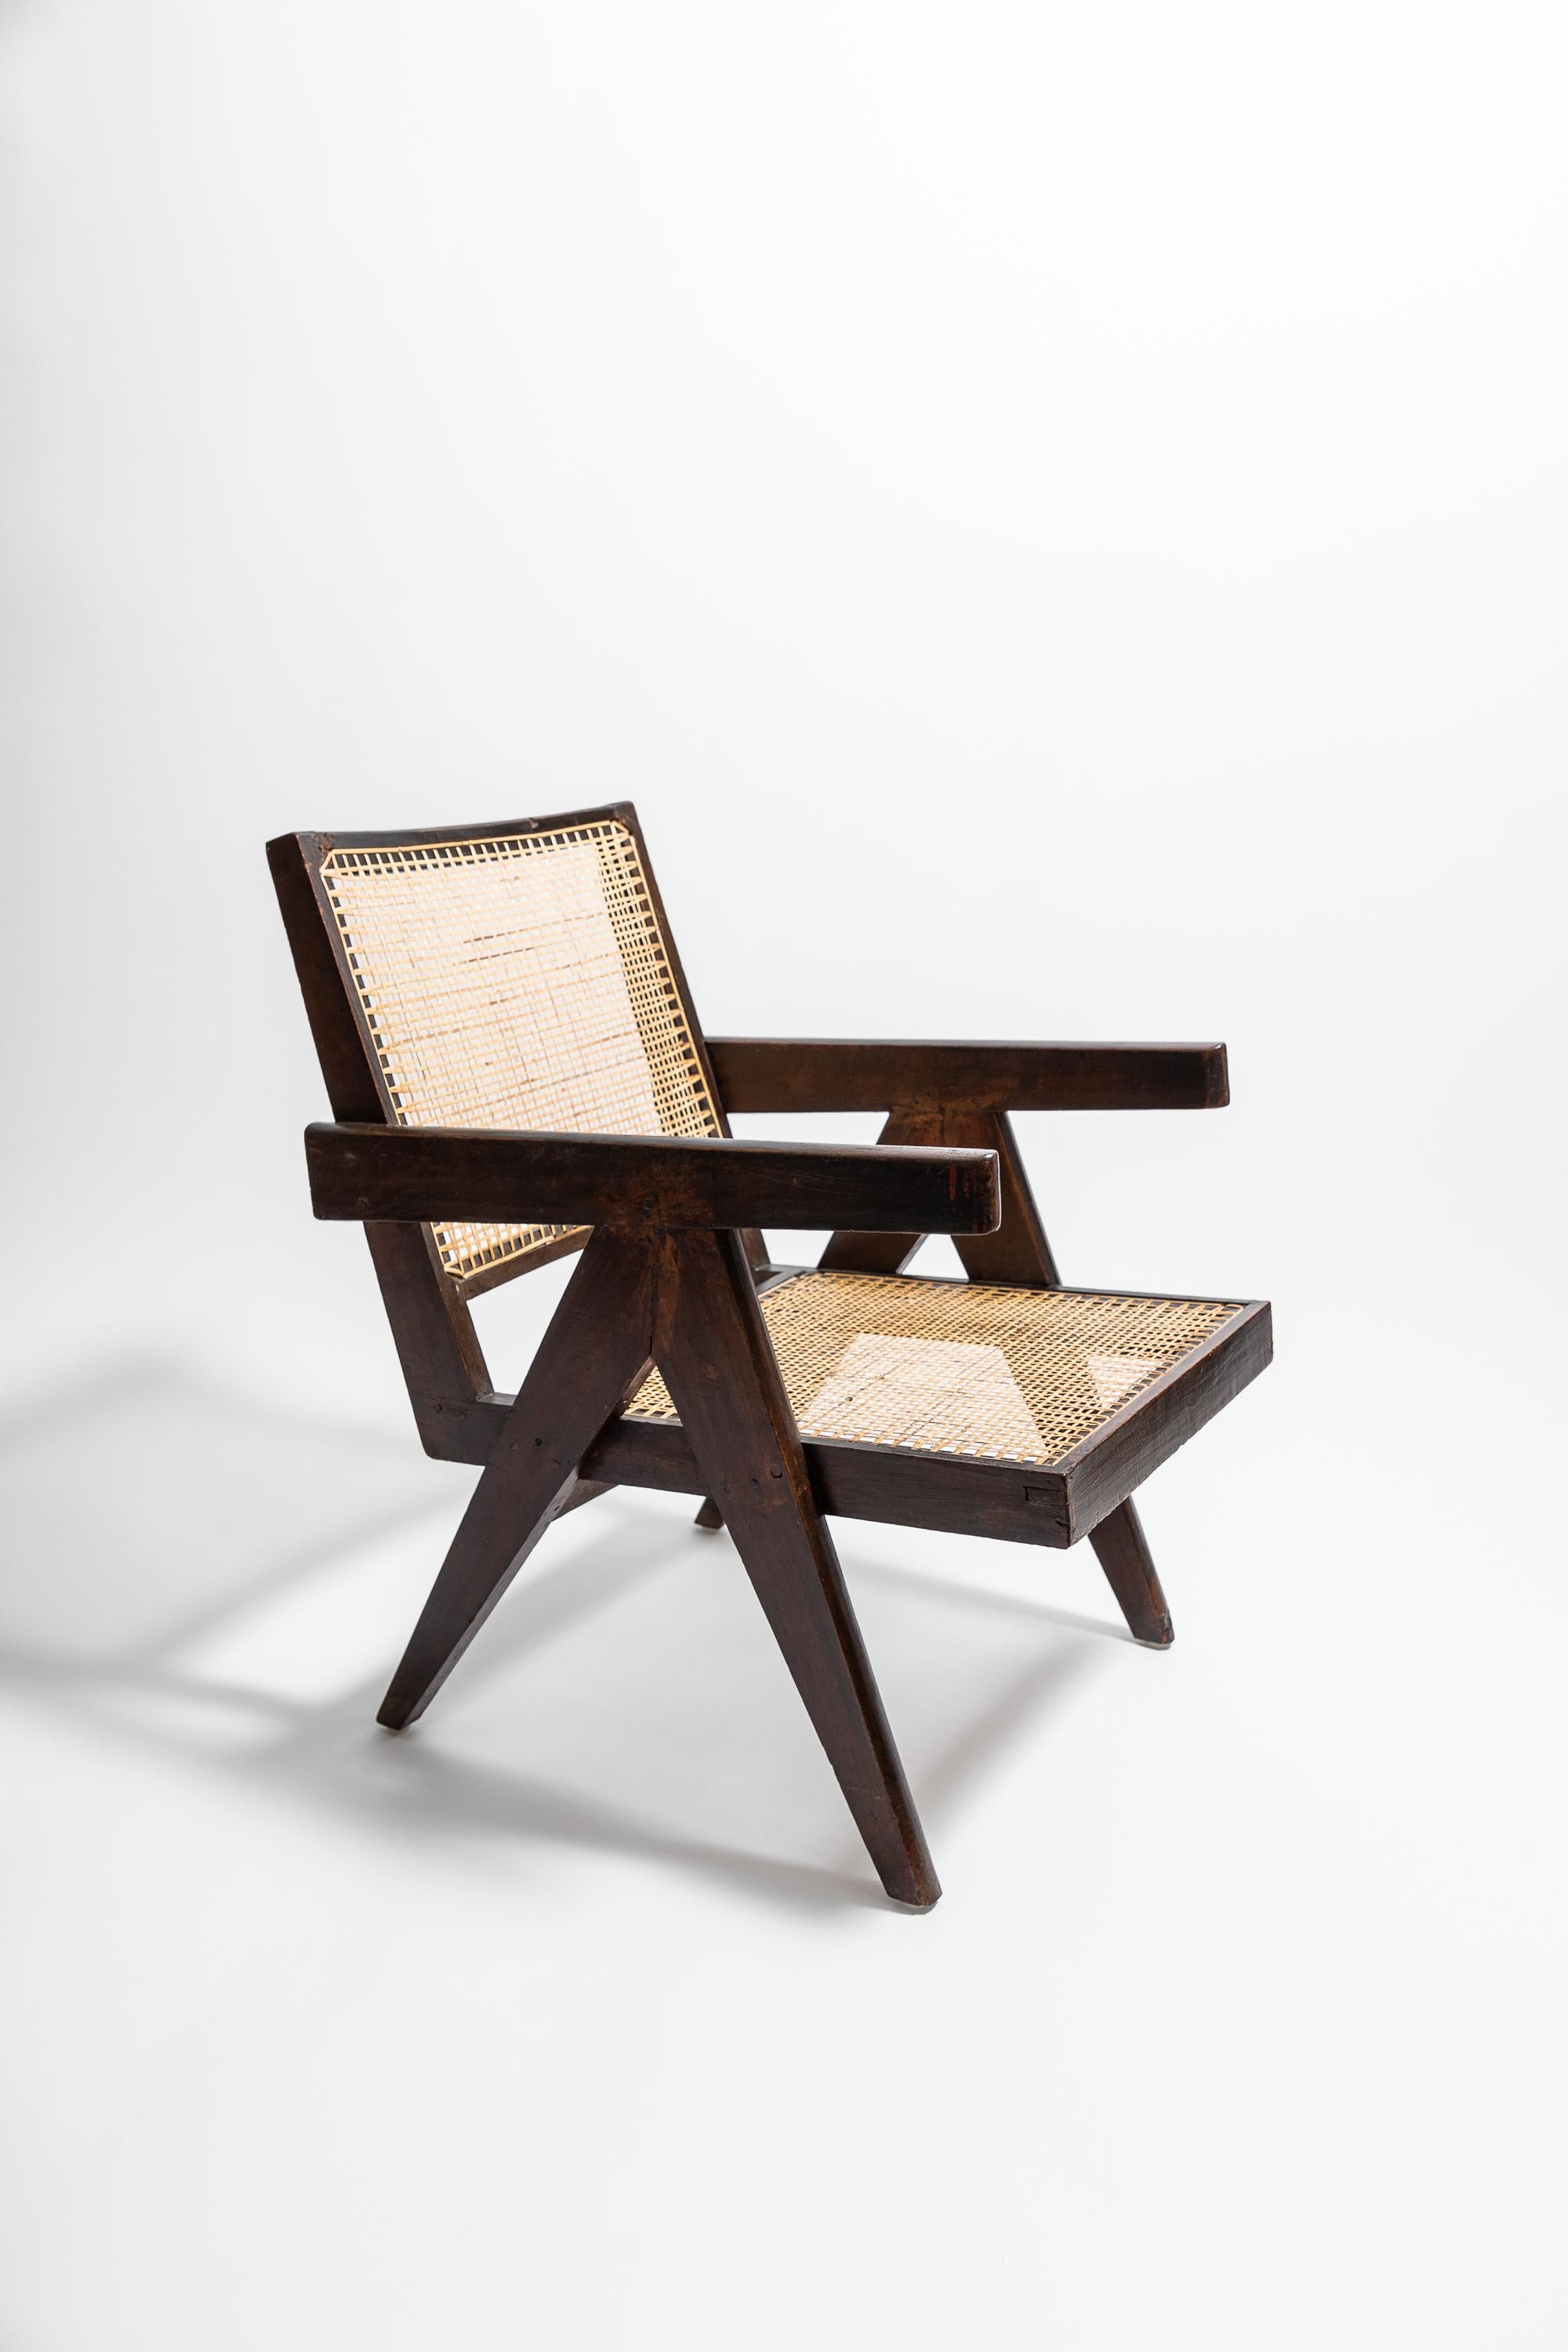 Magnifique fauteuil original conçu par Pierre Jeanneret. Modèle n°. PJ-SI-29-A. La Easy Chair est un chef-d'œuvre de design moderniste, confortable et pratique, qui met en valeur le style 